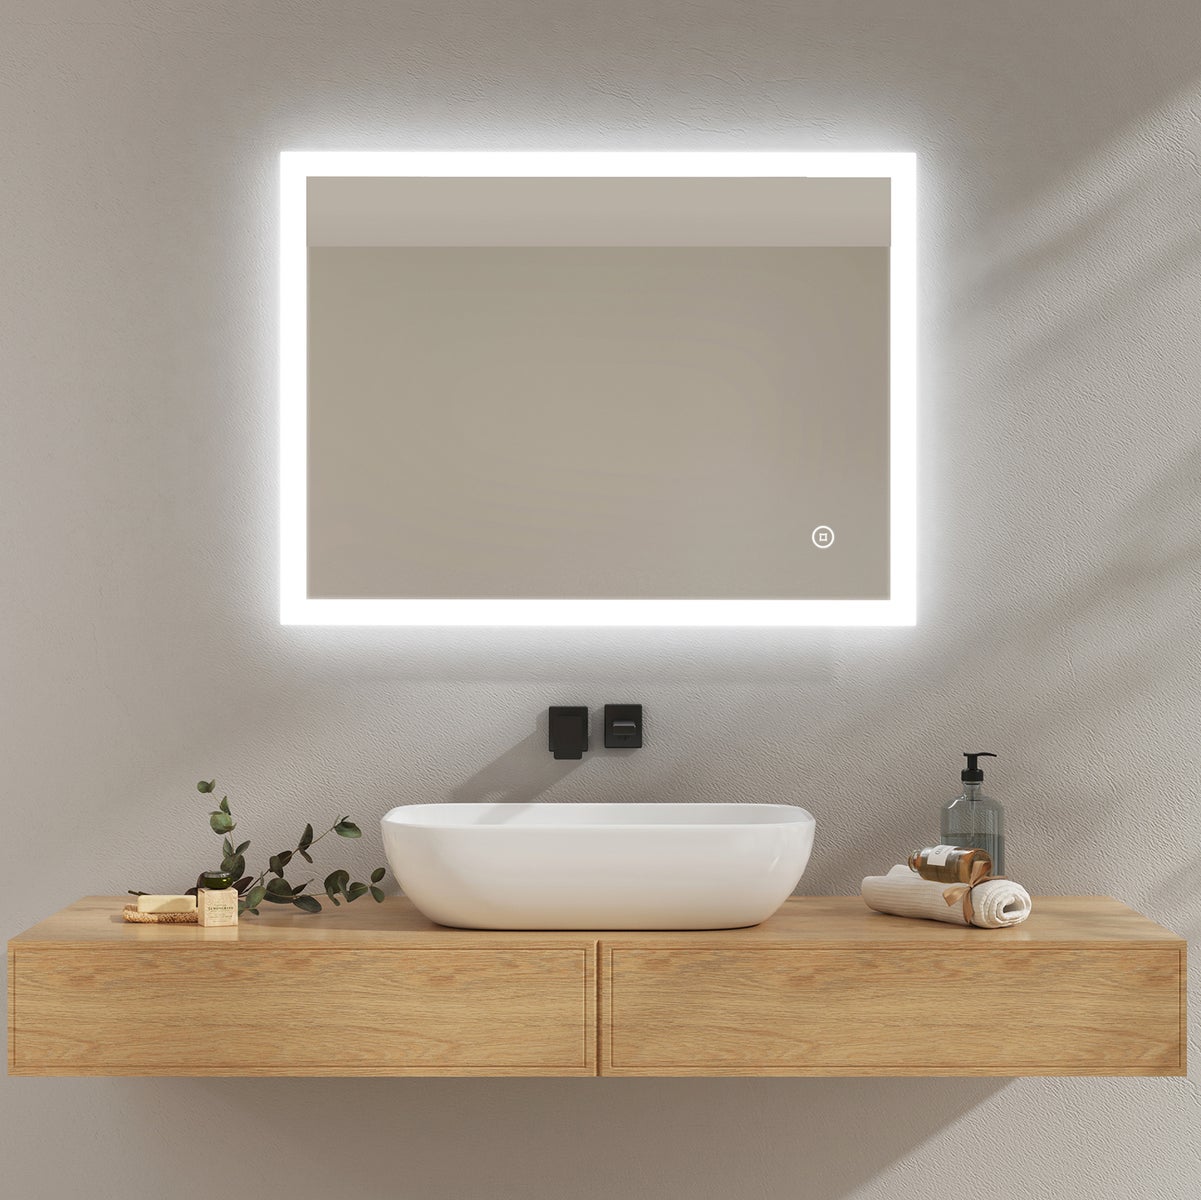 EMKE Badspiegel mit Beleuchtung, 80x60cm, Kaltweißes Licht